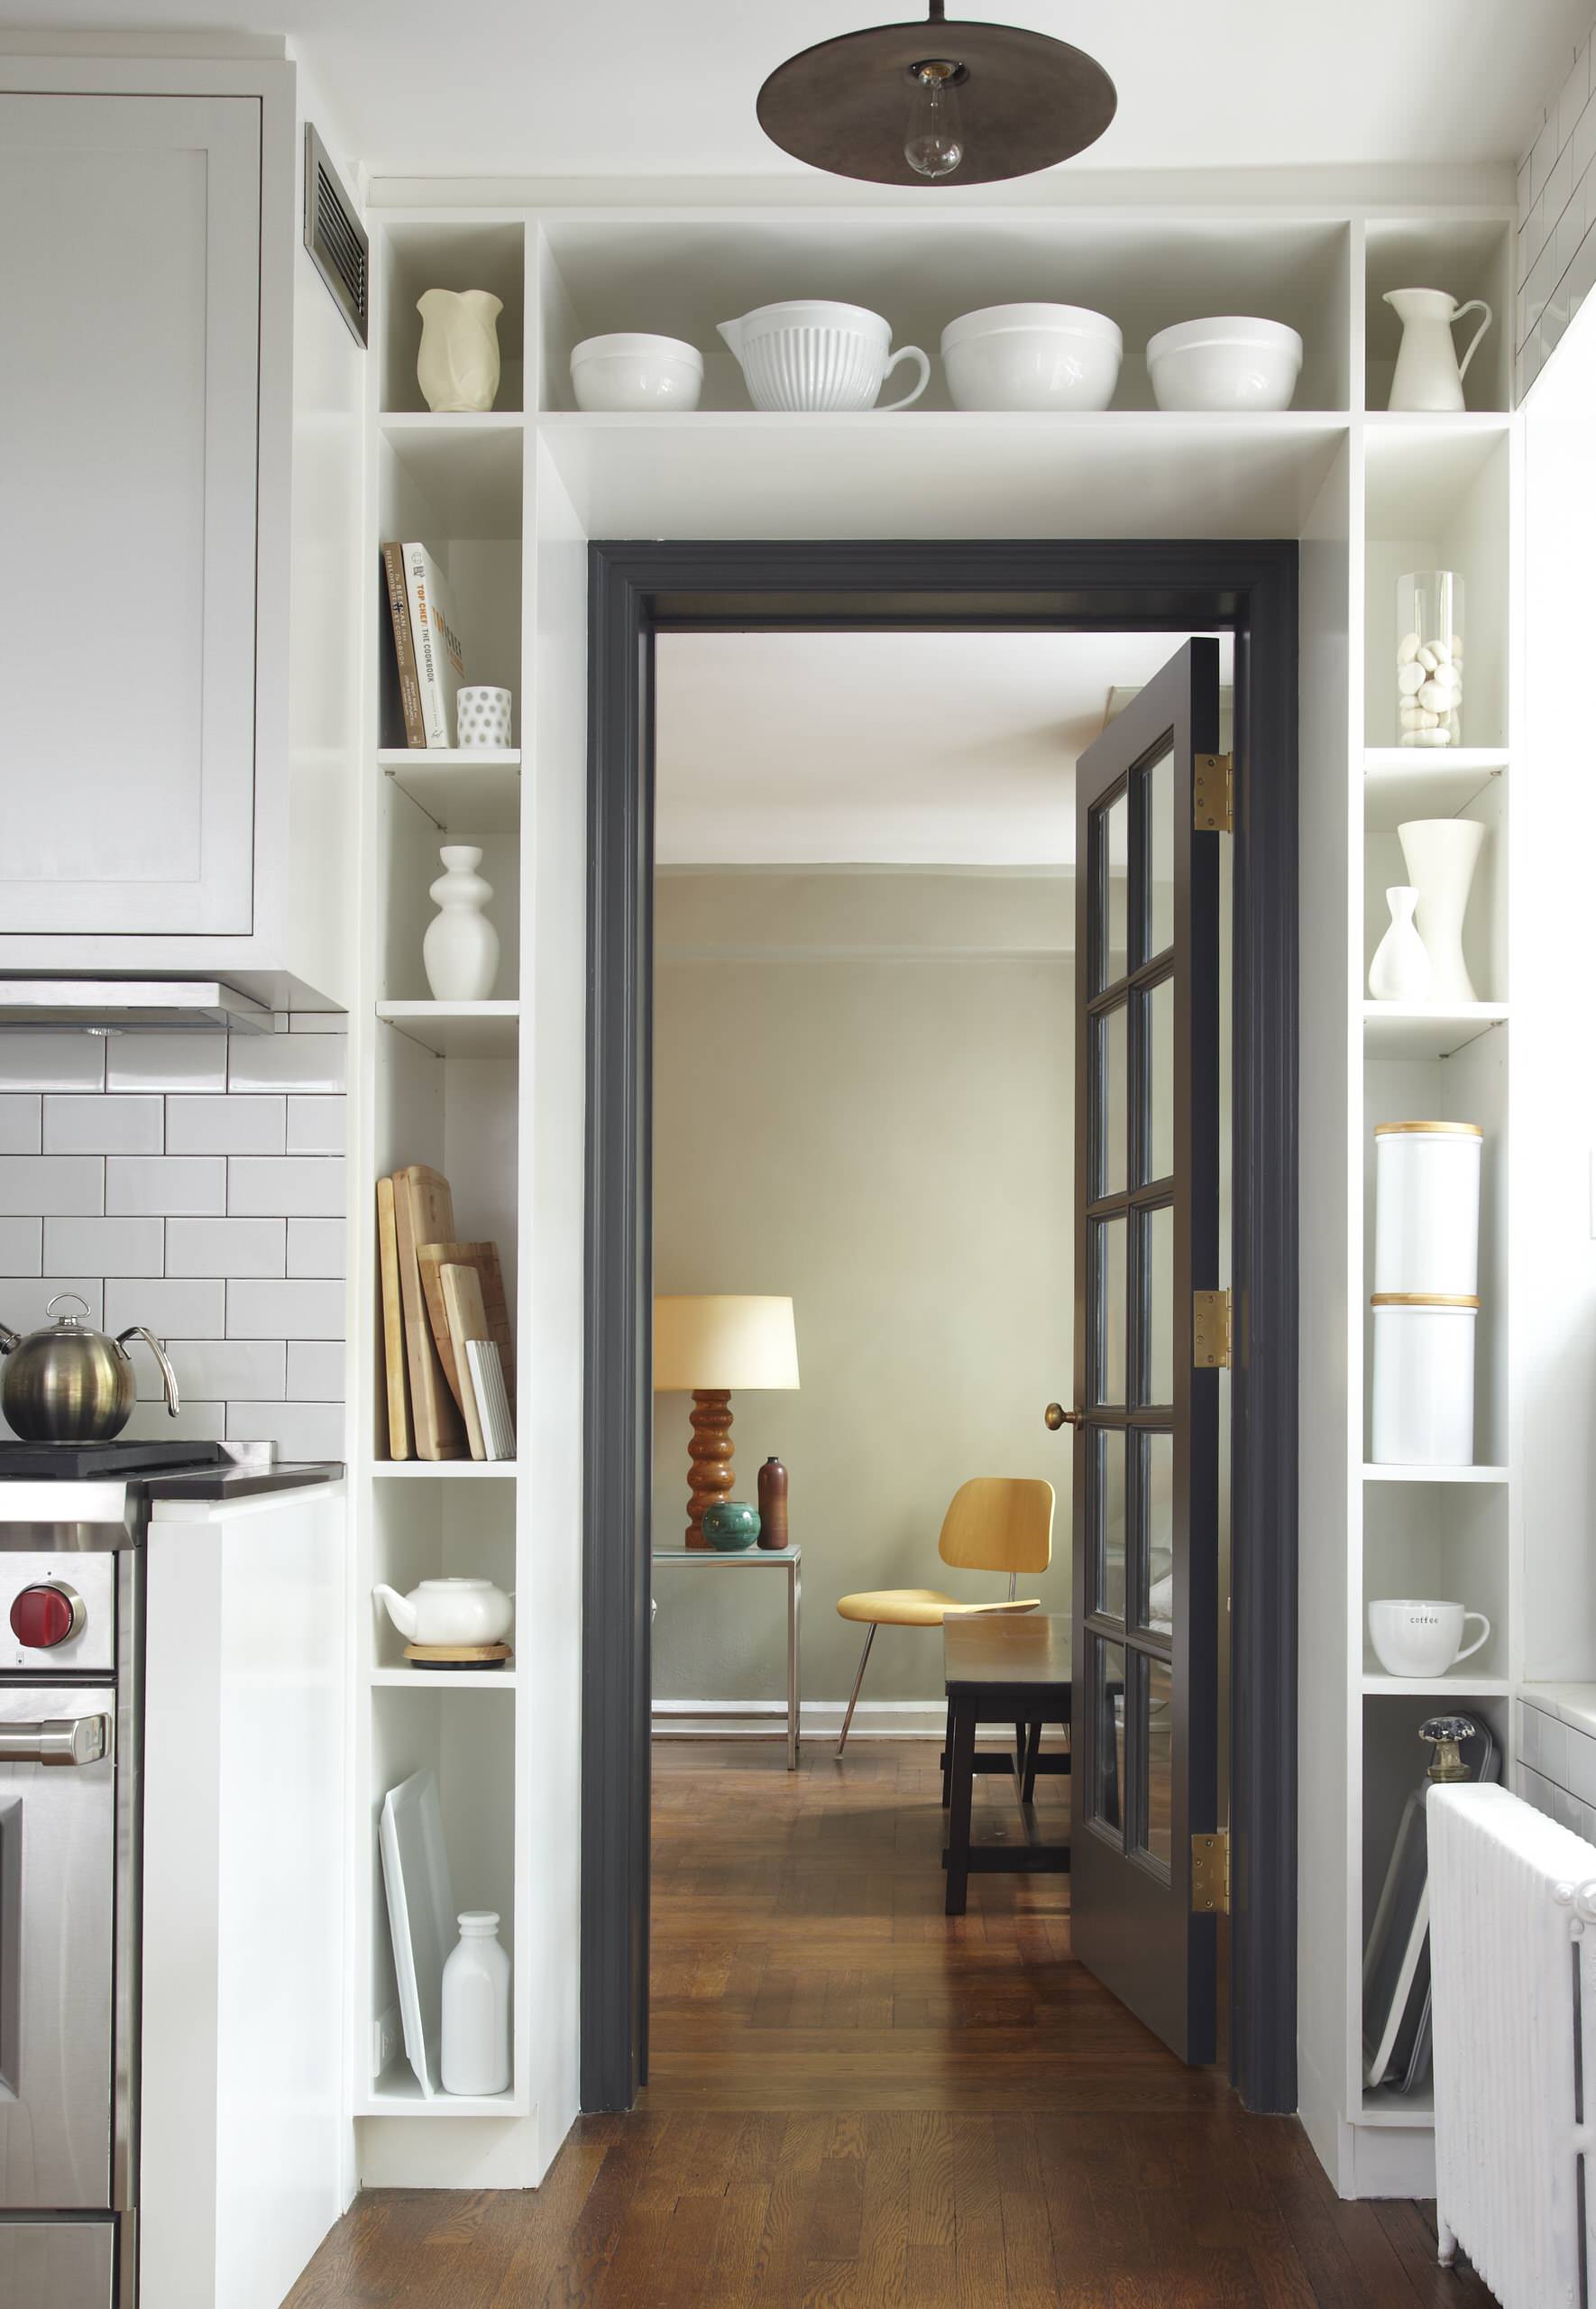 Простенок дома. Дизайнерские решения для маленьких квартир. Интересные идеи для интерьера квартиры. Интерьер кухни с дверью. Идеи для маленькой квартиры.